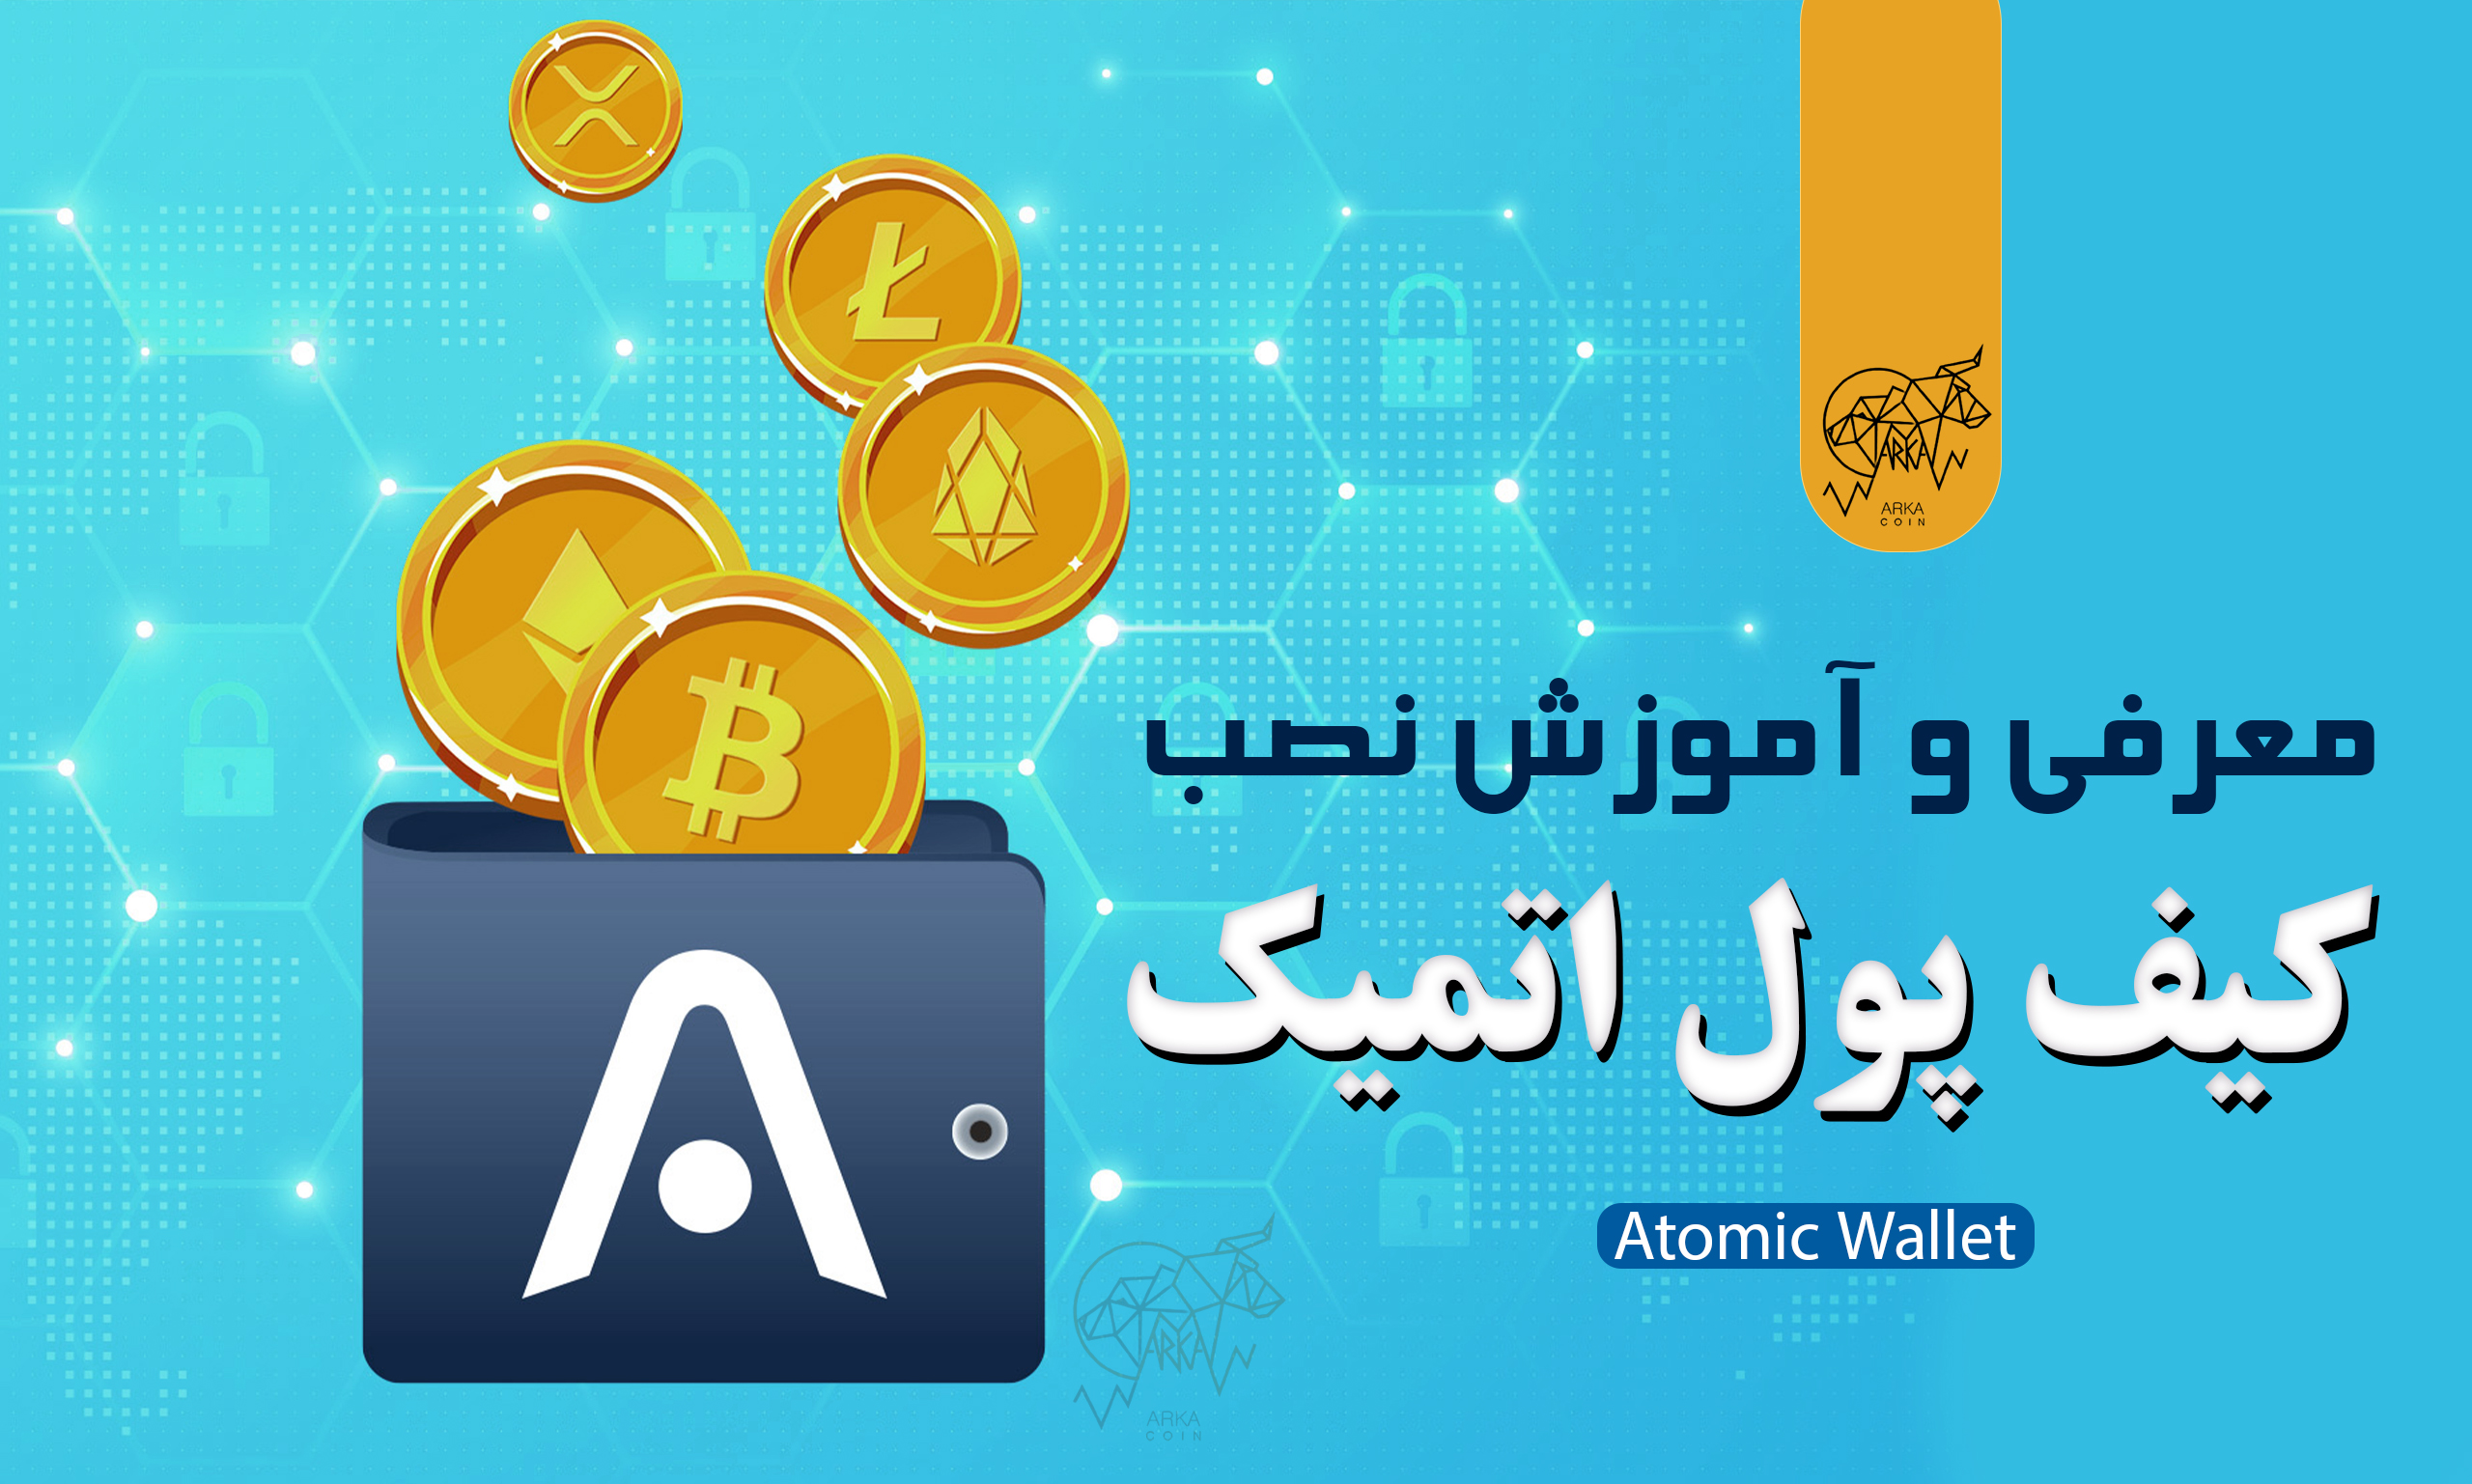 معرفی و آموزش نصب کیف پول اتمیک والت (Atomic Wallet)